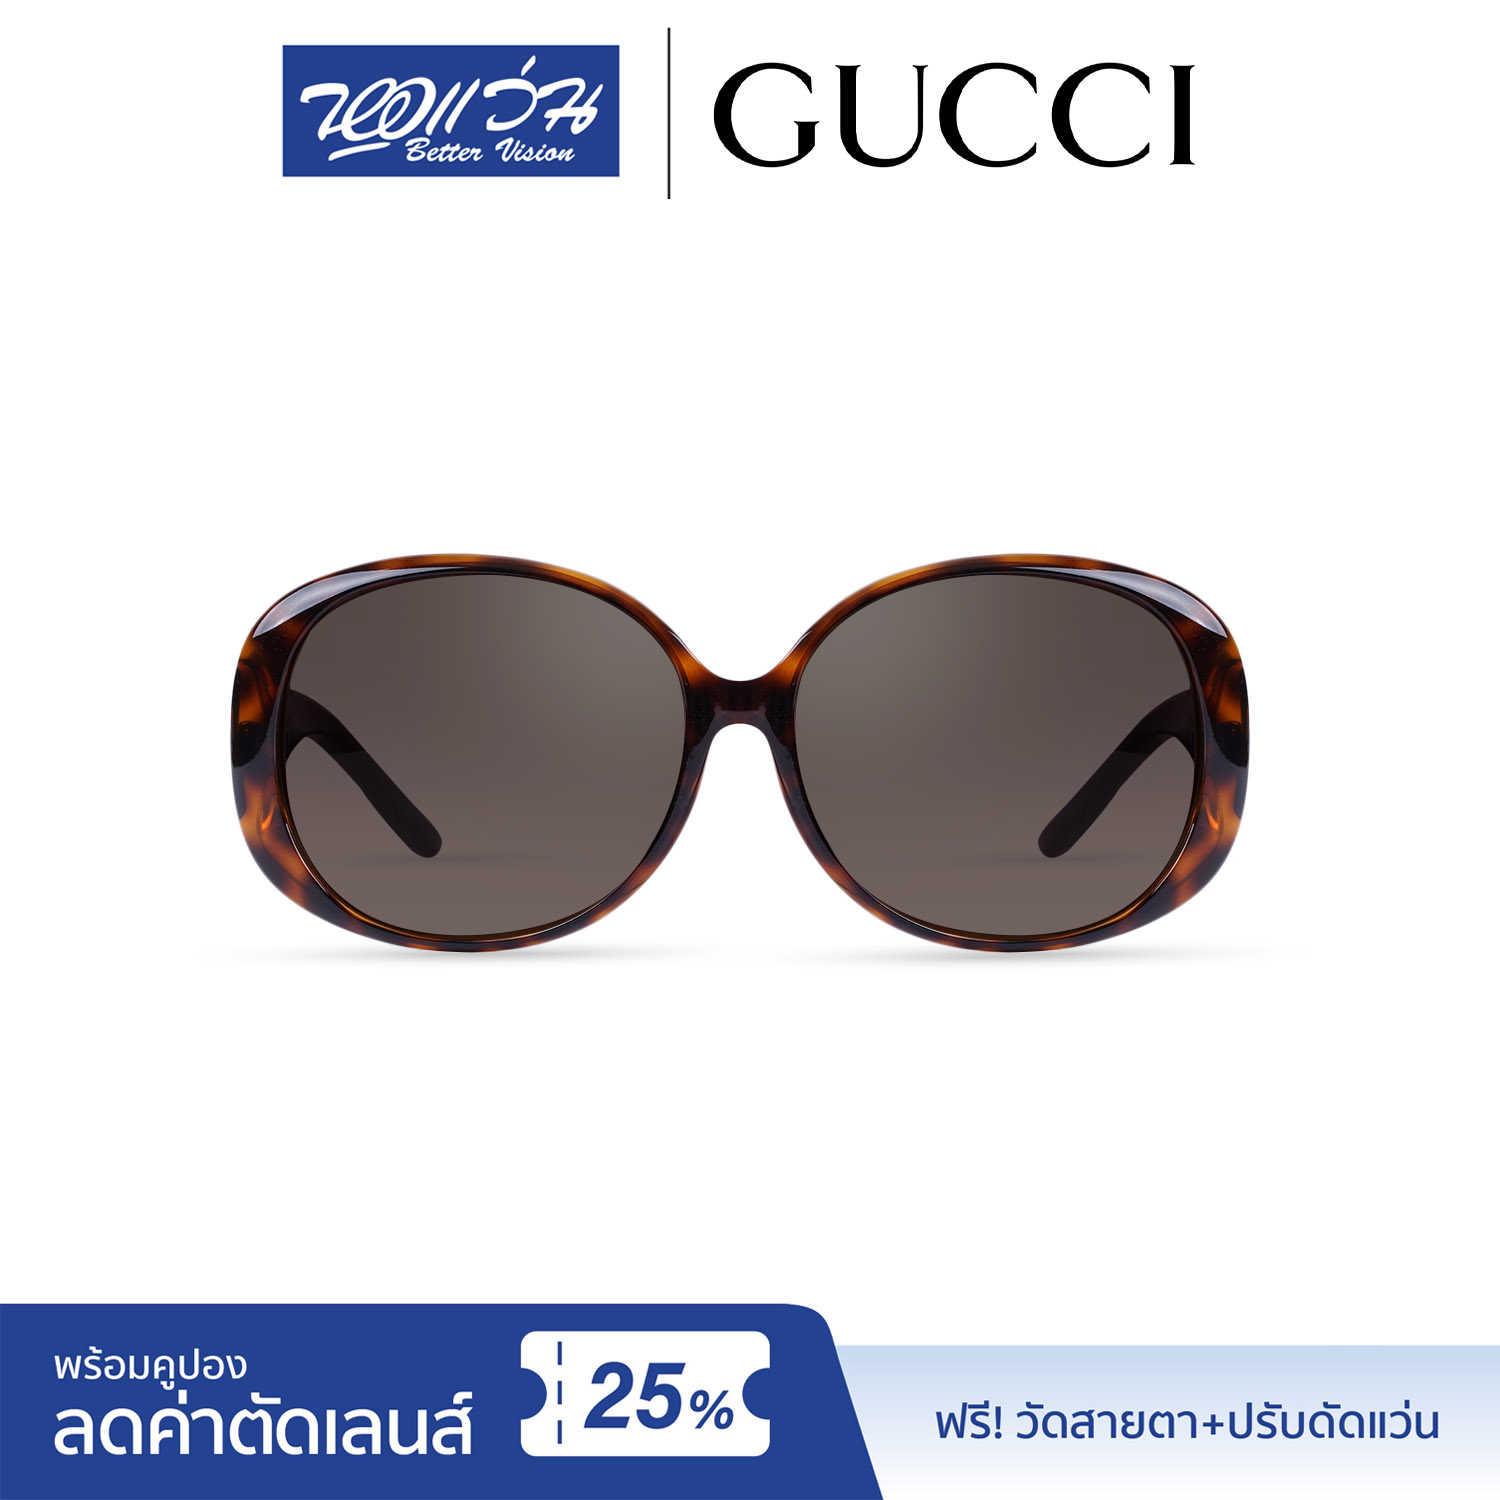 แว่นกันแดด กุชชี่ Gucci Sunglasses  แถมฟรีส่วนลดค่าตัดเลนส์ 25% free 25% lens discount รุ่น FGC3550